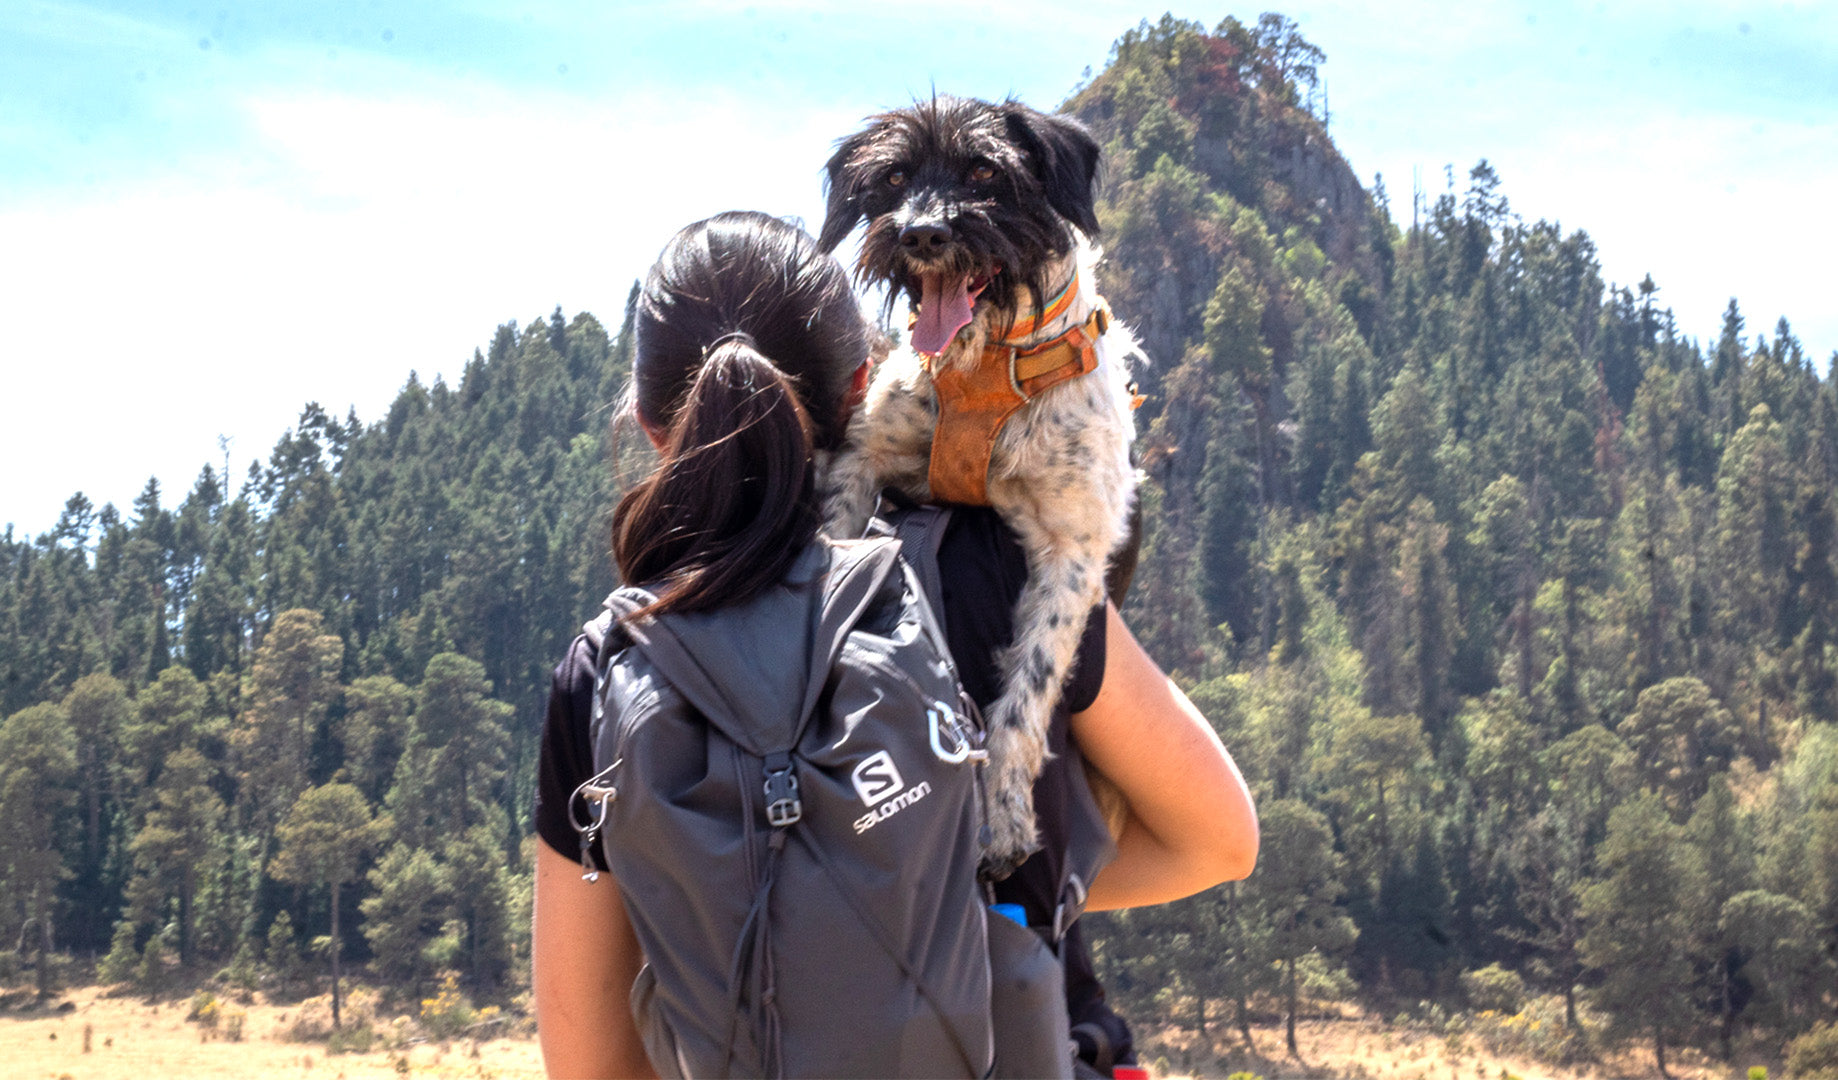 Rutas al aire libre para disfrutar con tu perro – Salomon MX